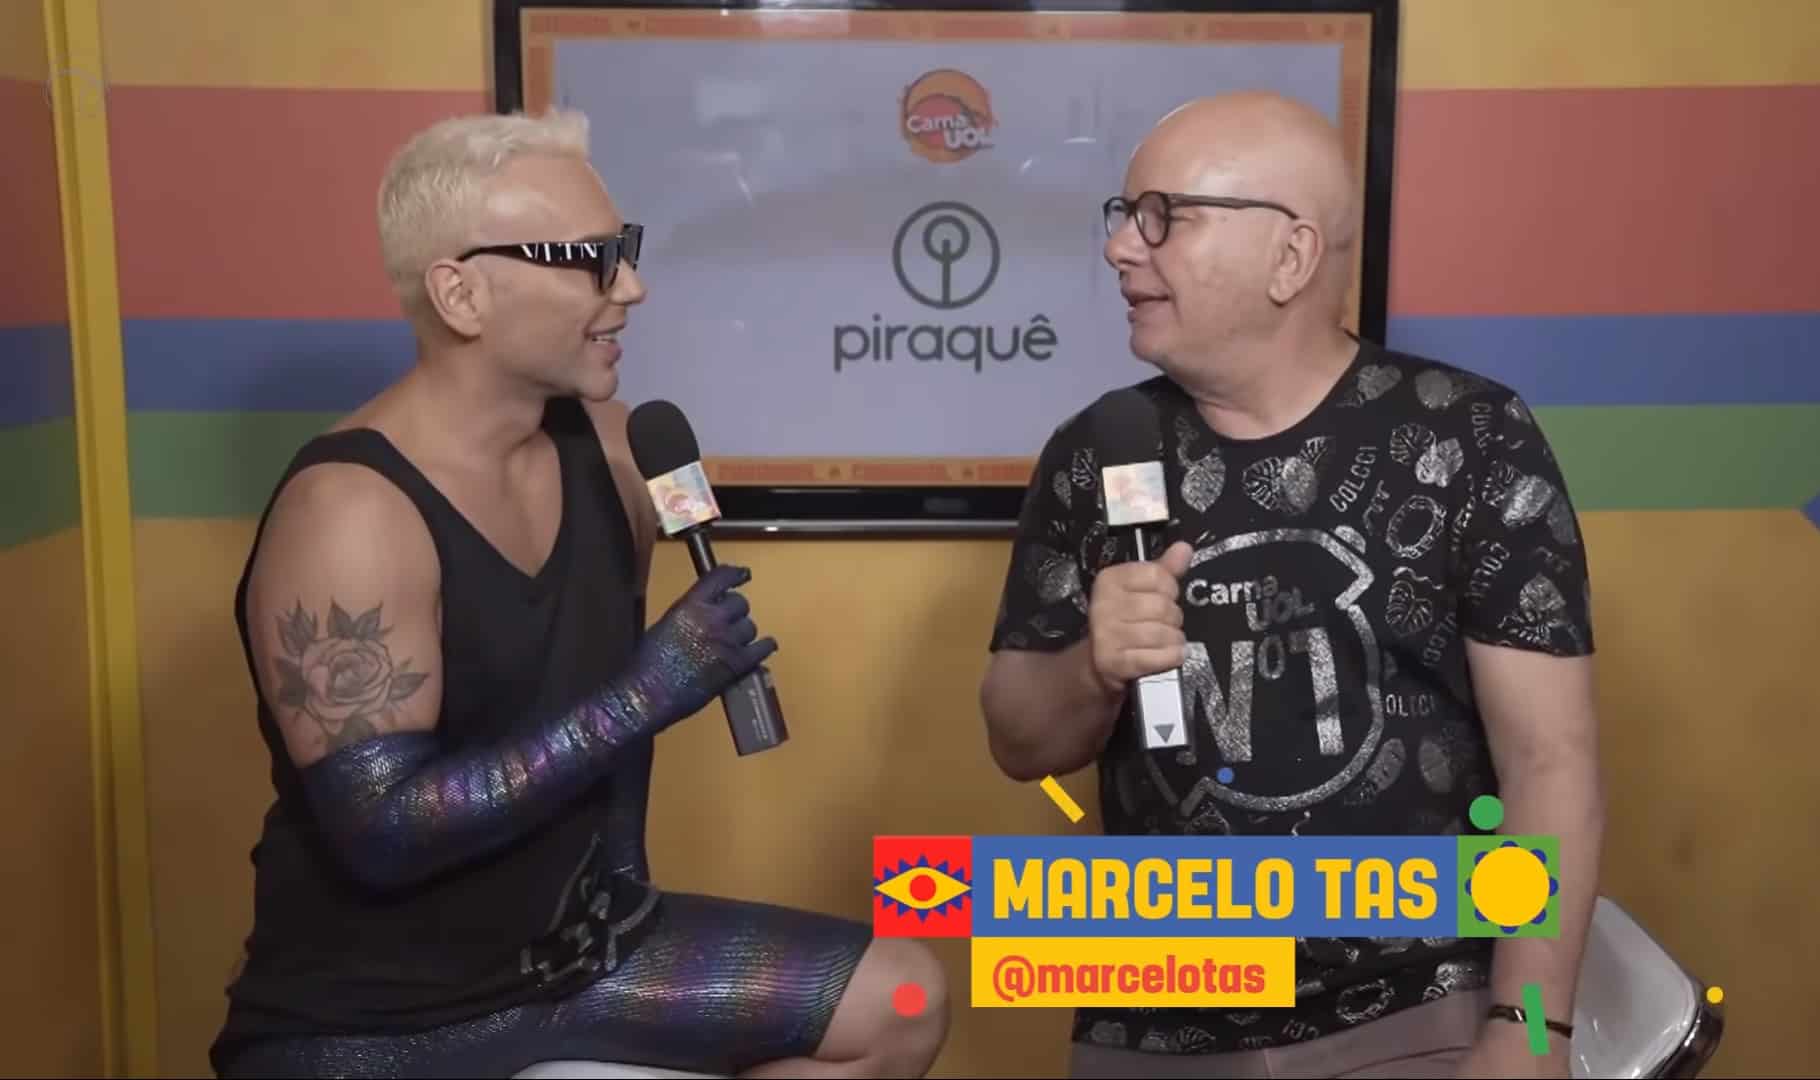 Marcelo Tas surpreende e diz não sentir saudade do CQC